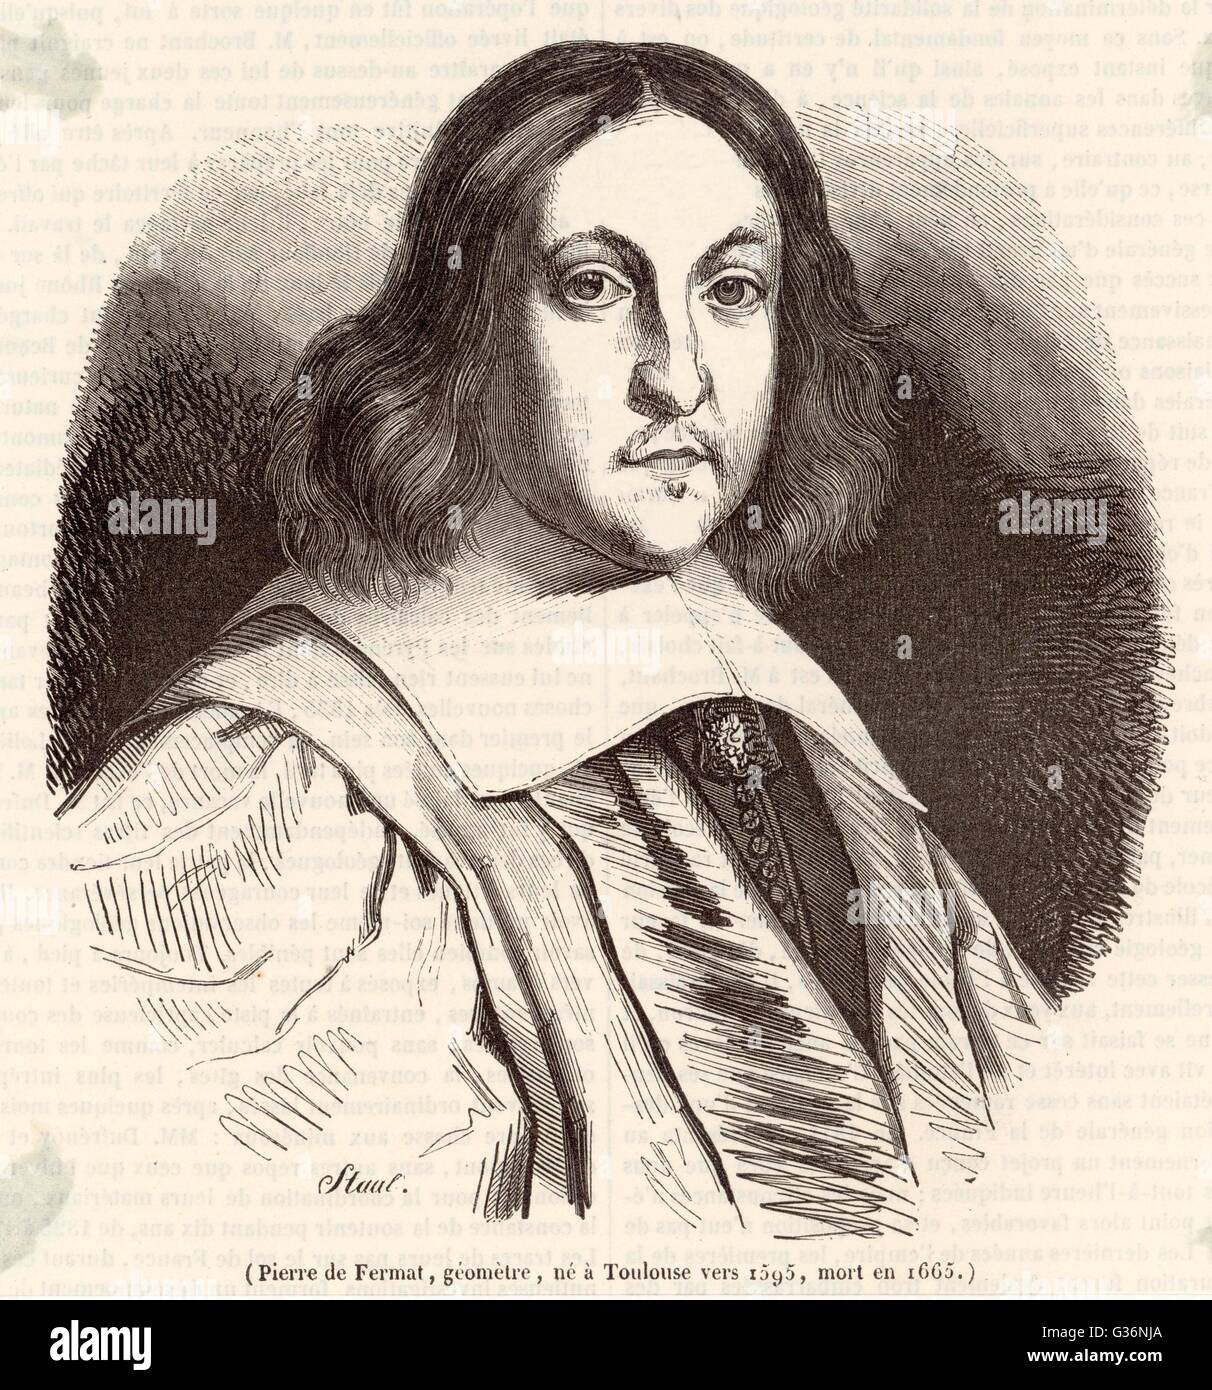 Pierre de Fermat (1601-1665), avocat et mathématicien amateur français. Il est connu pour les développements modernes de calcul, et pour des recherches sur la théorie des nombres. Il est surtout connu pour le dernier théorème de Fermat. Date : vers 1650 Banque D'Images